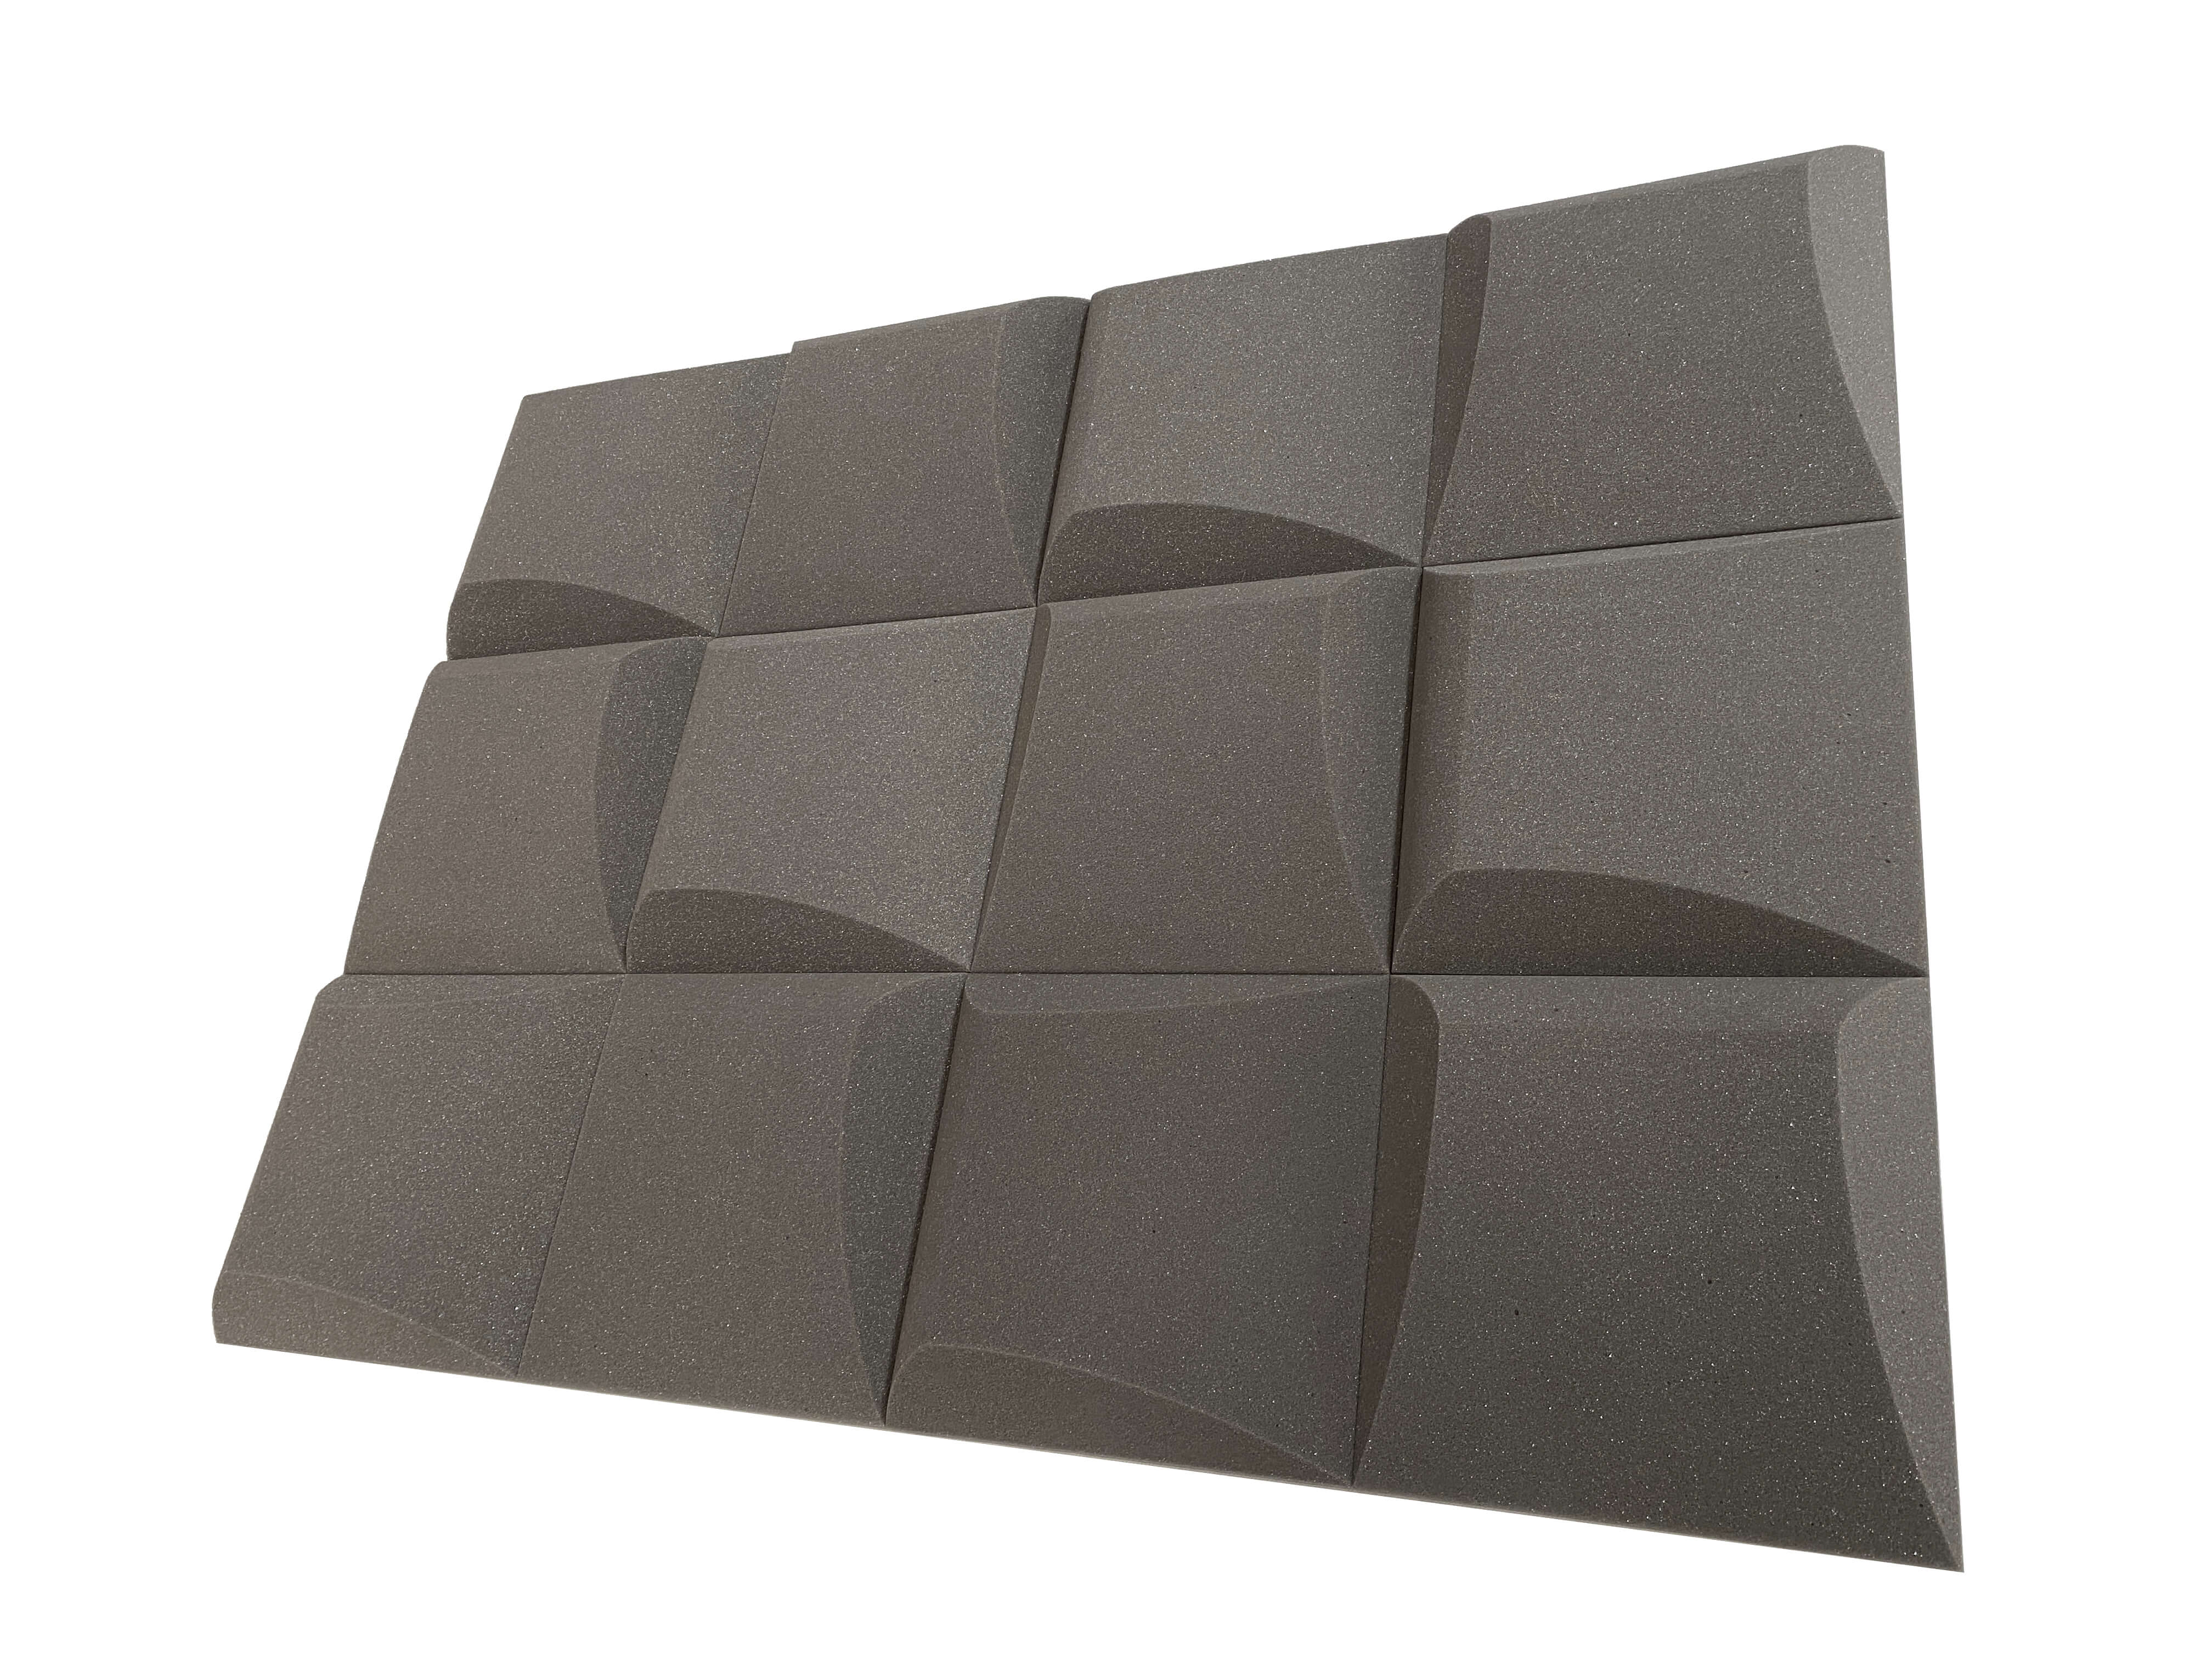 AeroFoil 12" Acoustic Studio Foam Tile Pack - 12 Tiles, 1.1qm Coverage